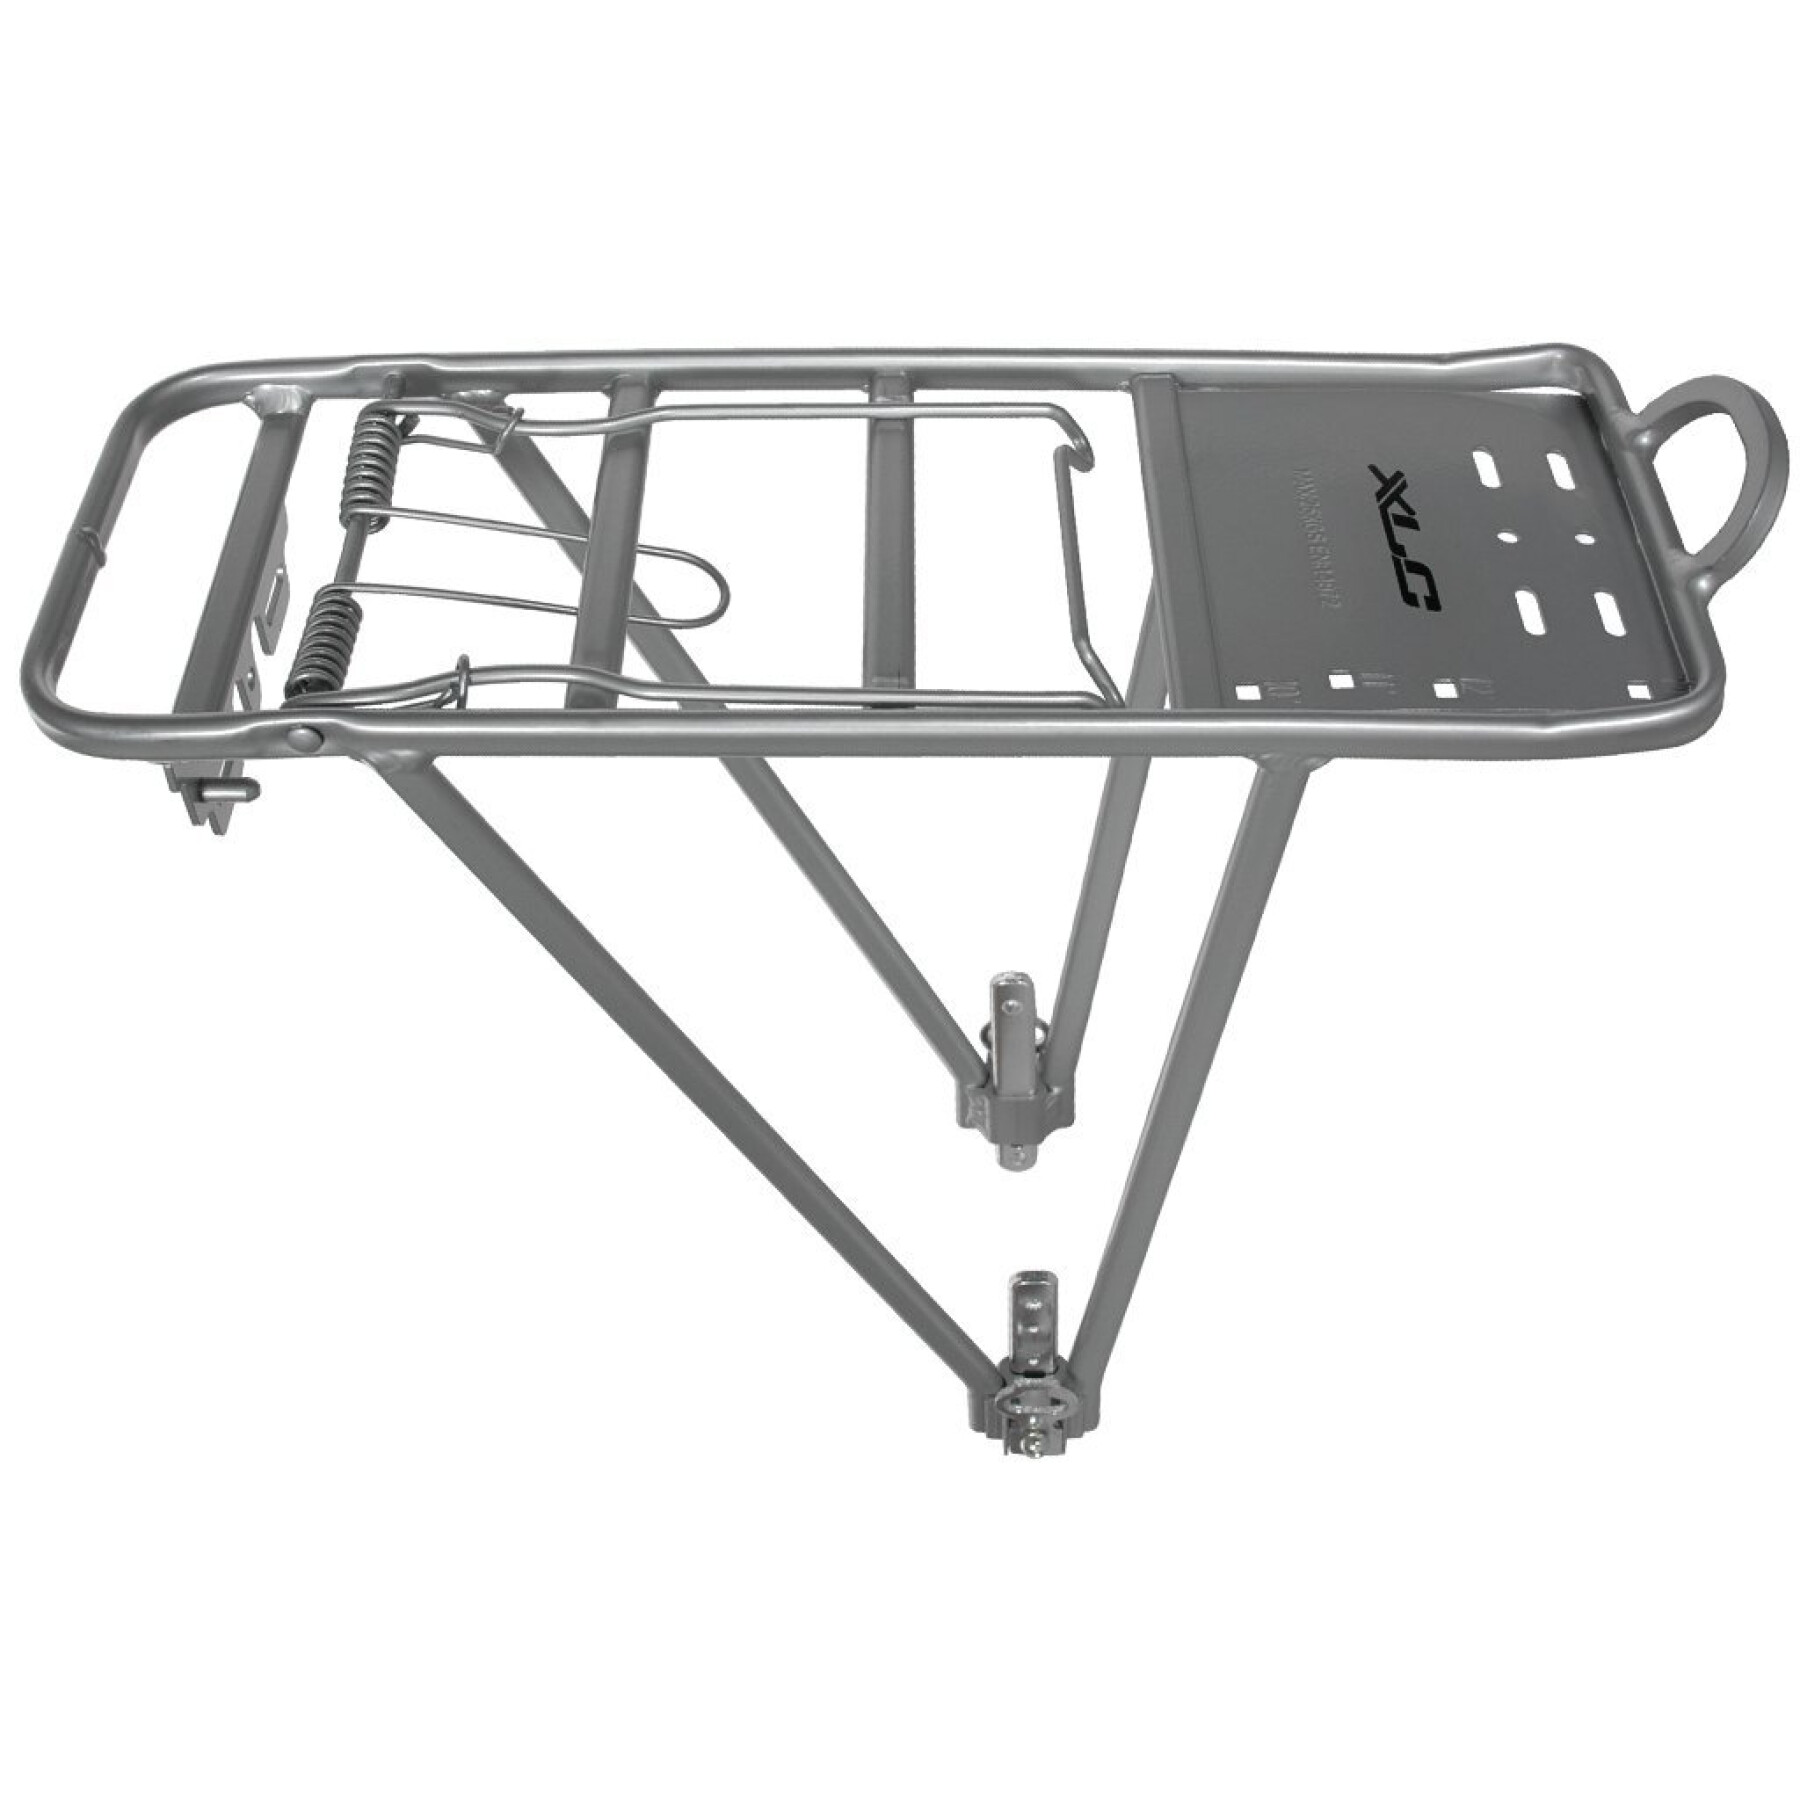 Aluminum rear rack XLC Rp-r02